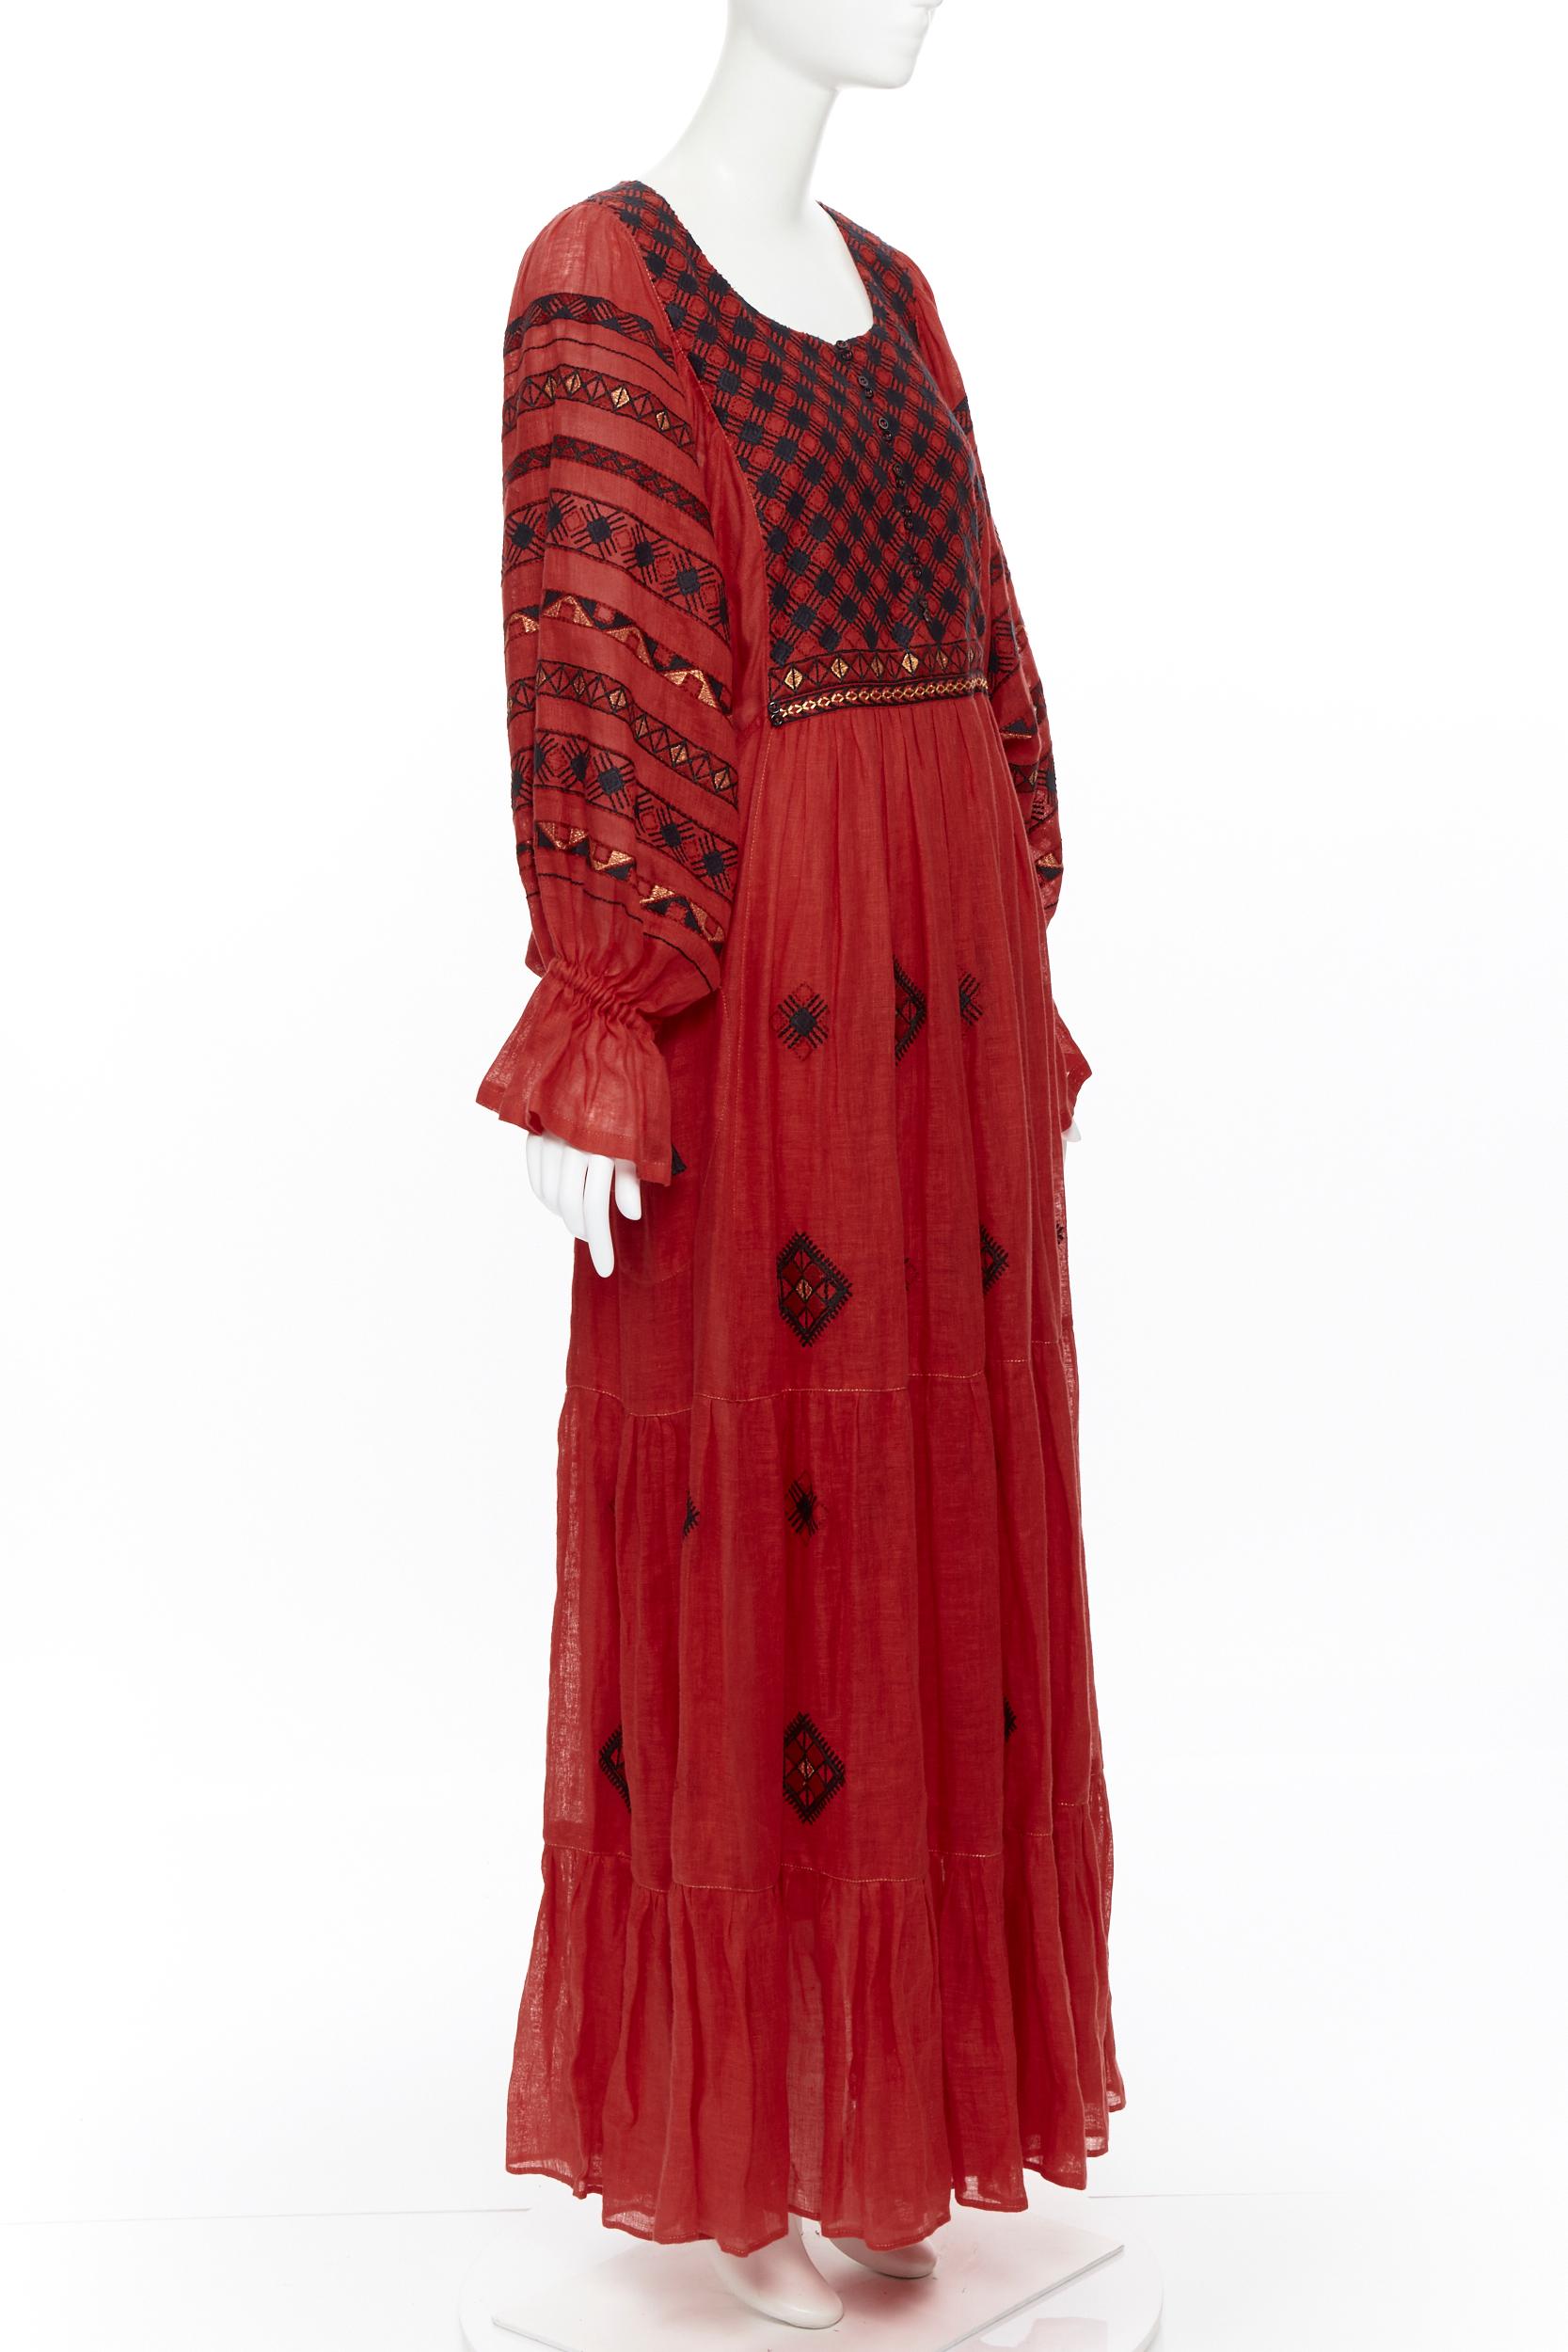 Red new VITA KIN red Vyshyvanka embroidery bohemian folk bubble sleeve maxi dress S